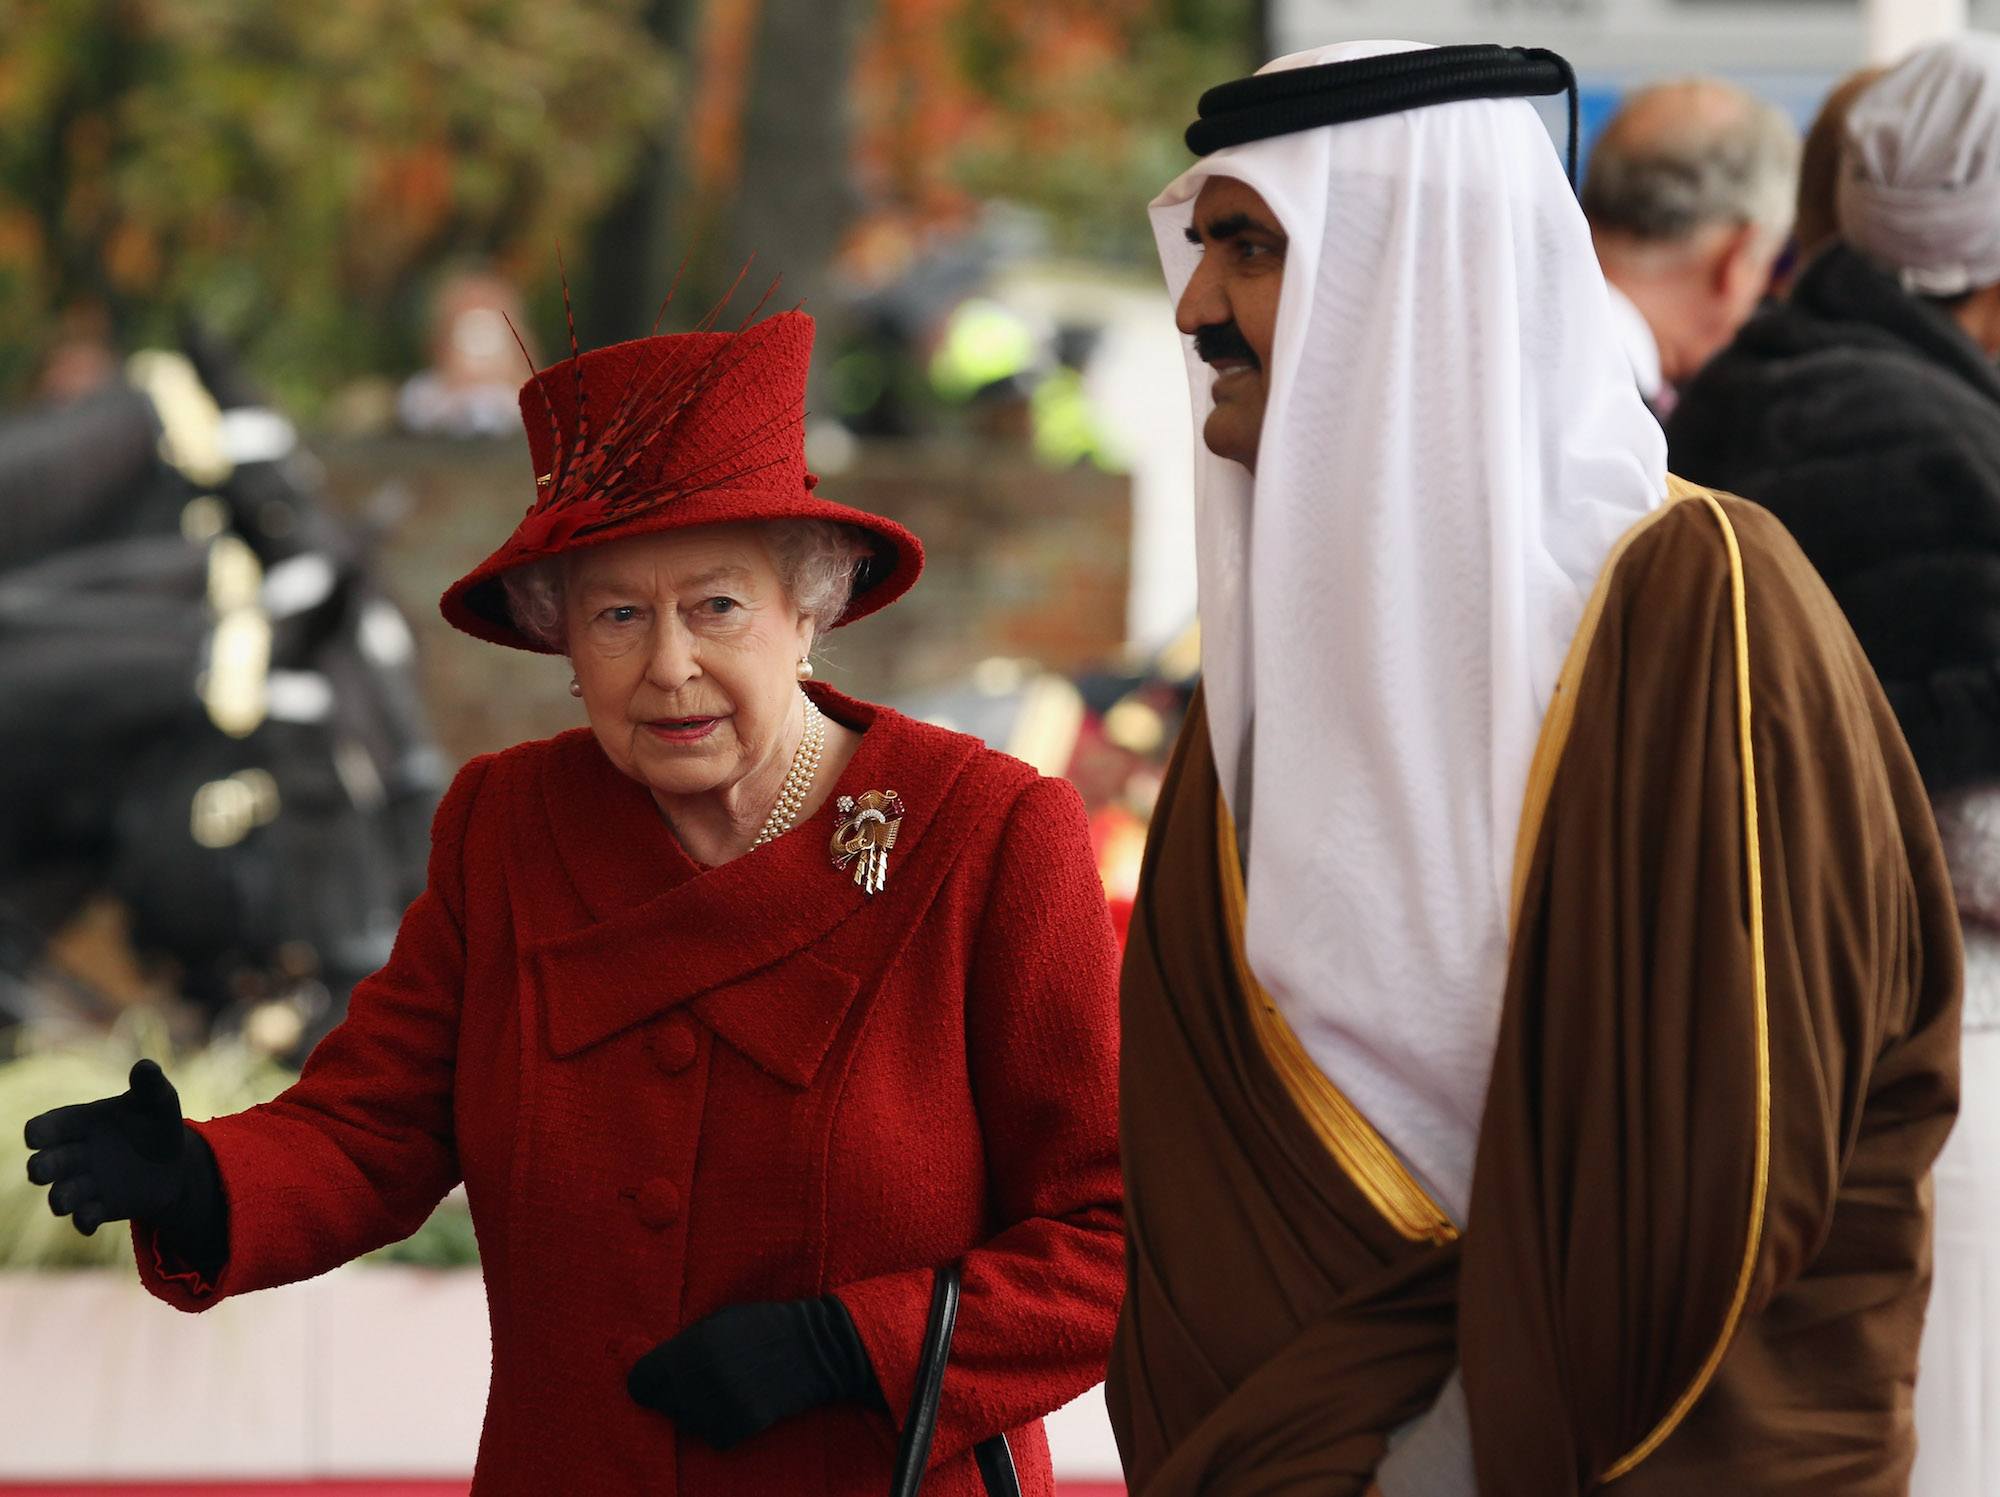 The Emir of Qatar, Sheikh Hamad bin Khalifa al Thani is greeted by Queen Elizabeth II